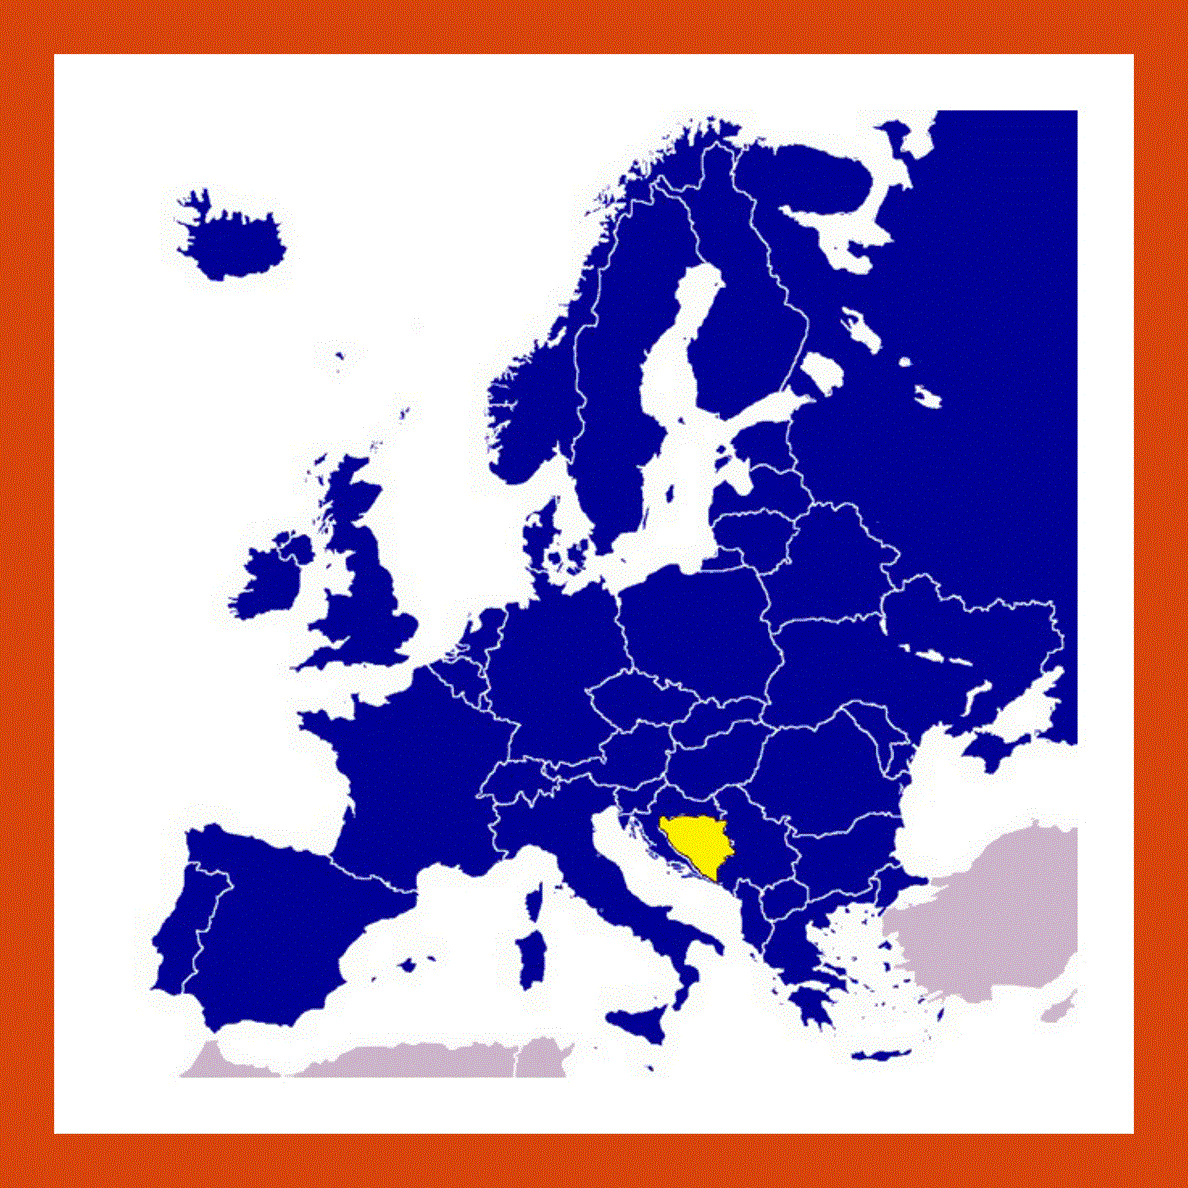 Bosnia and Herzegovina on map of Europe